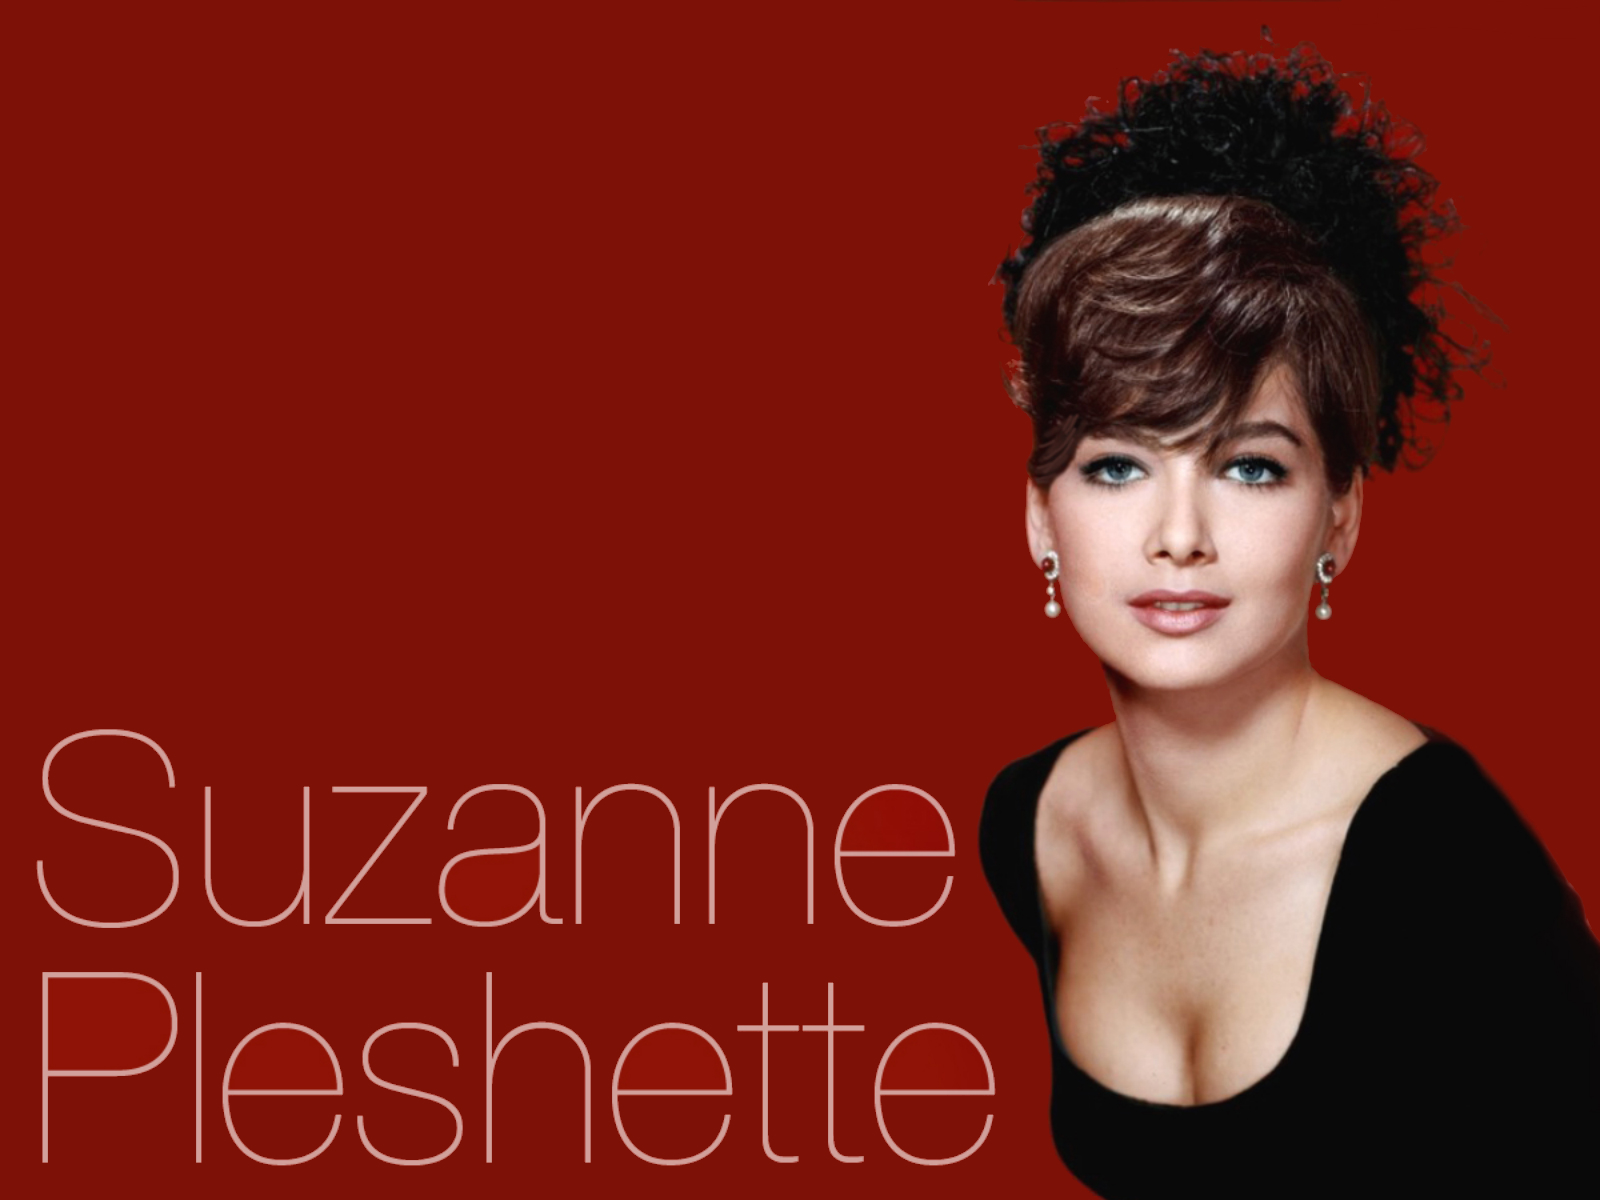 suzanne-pleshette-pictures